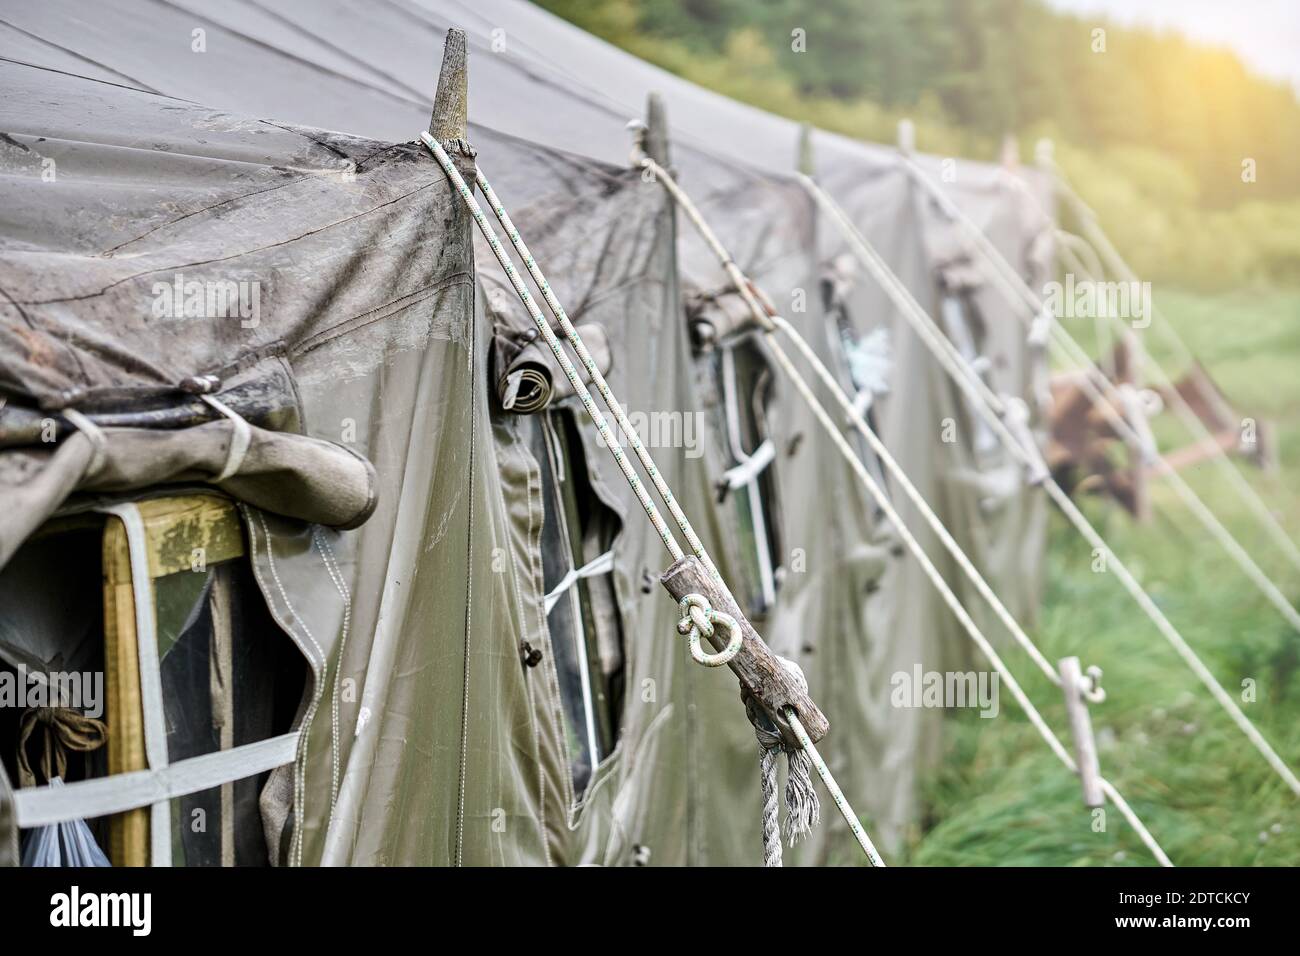 Grande campo militare tenda con finestre e una stufa sul prato nella foresta. Primo piano del finestrino della tenda Foto Stock